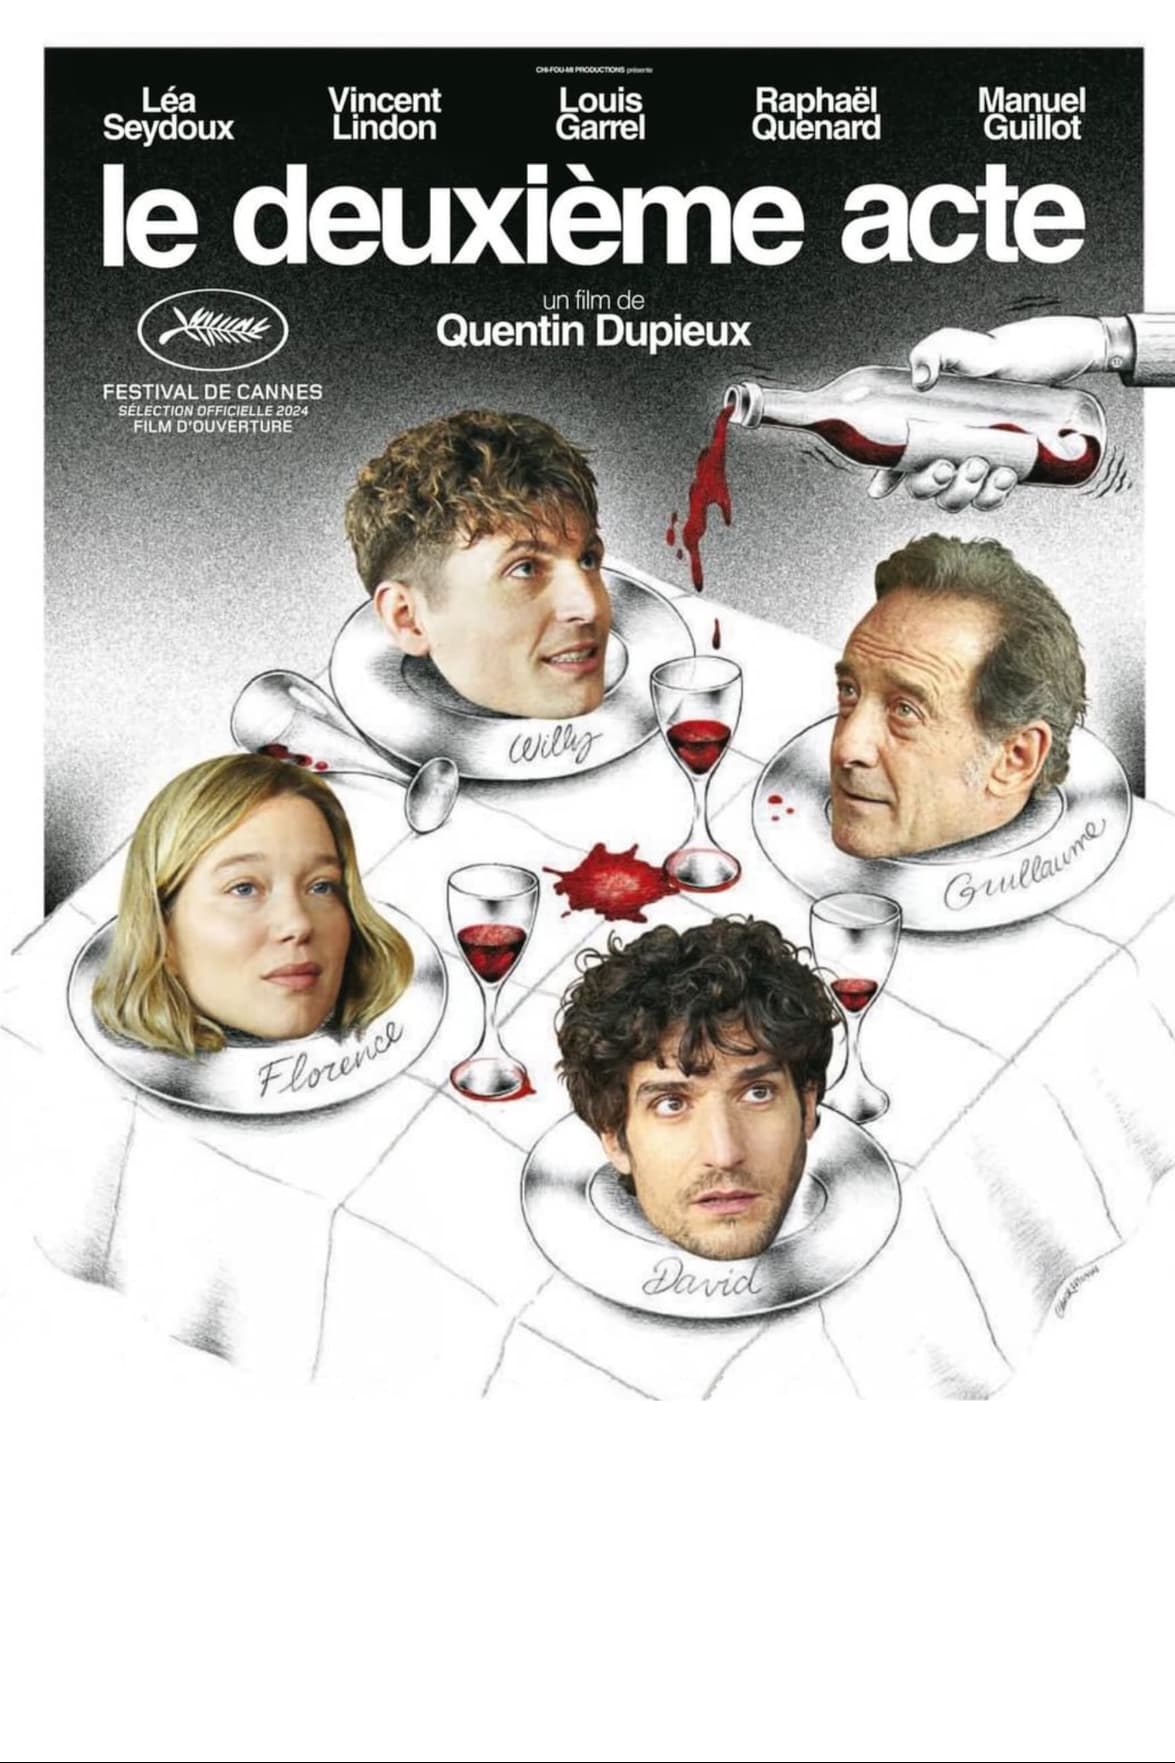 Poster for the movie "Le deuxième acte"